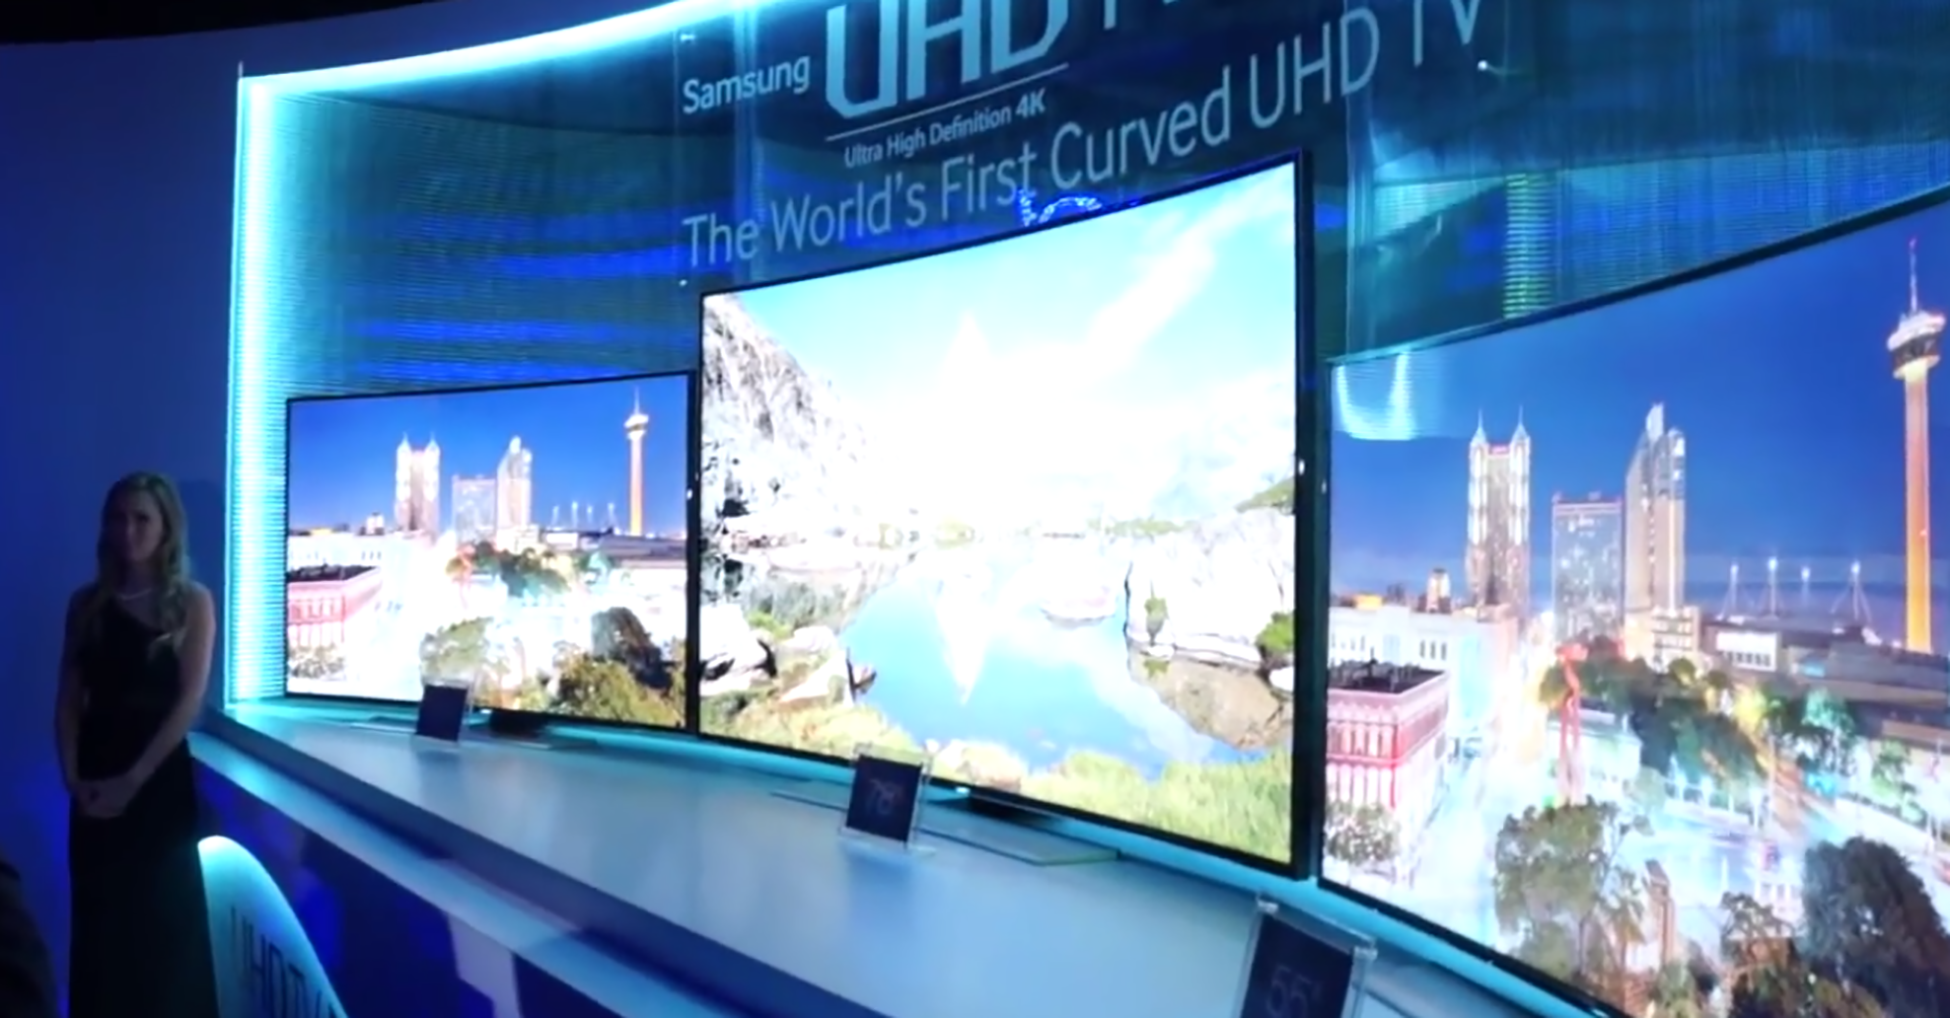 Uma fotografia mostra uma grande televisão com tela côncava. Acima da tela da televisão há uma placa que diz: Samsung U H D, o primeiro U H D T V curvo do mundo